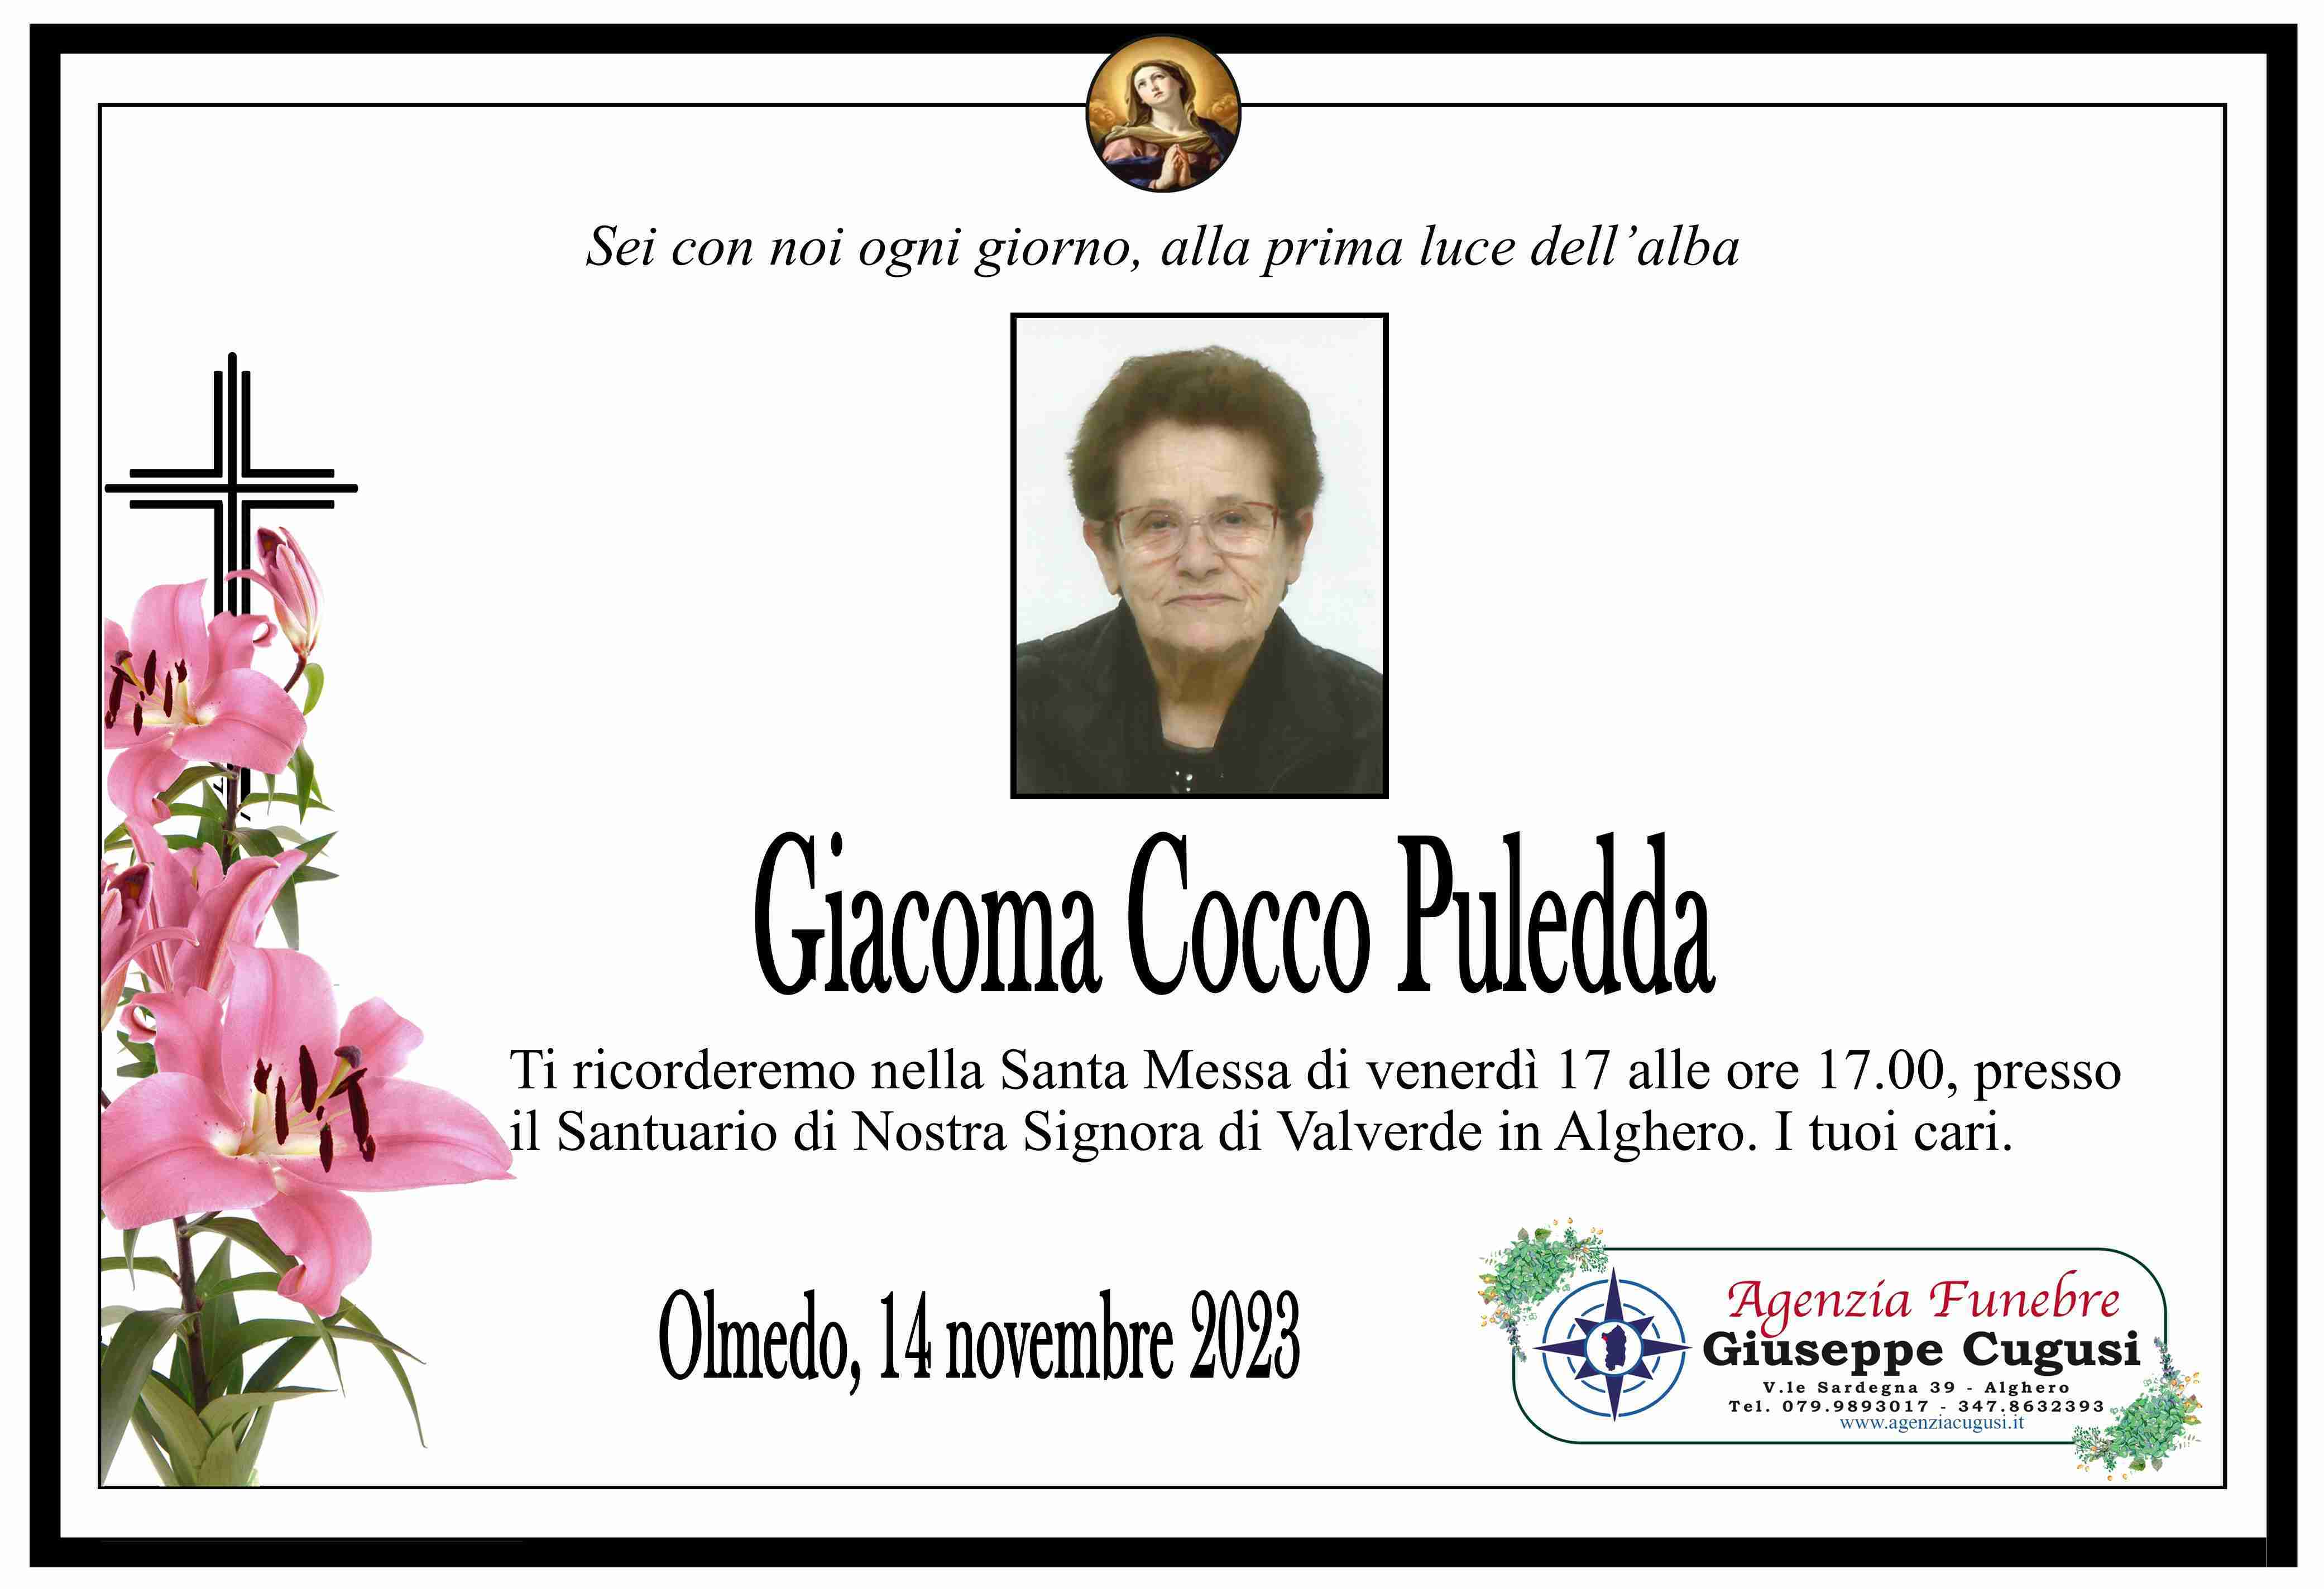 Giacoma Cocco Puledda